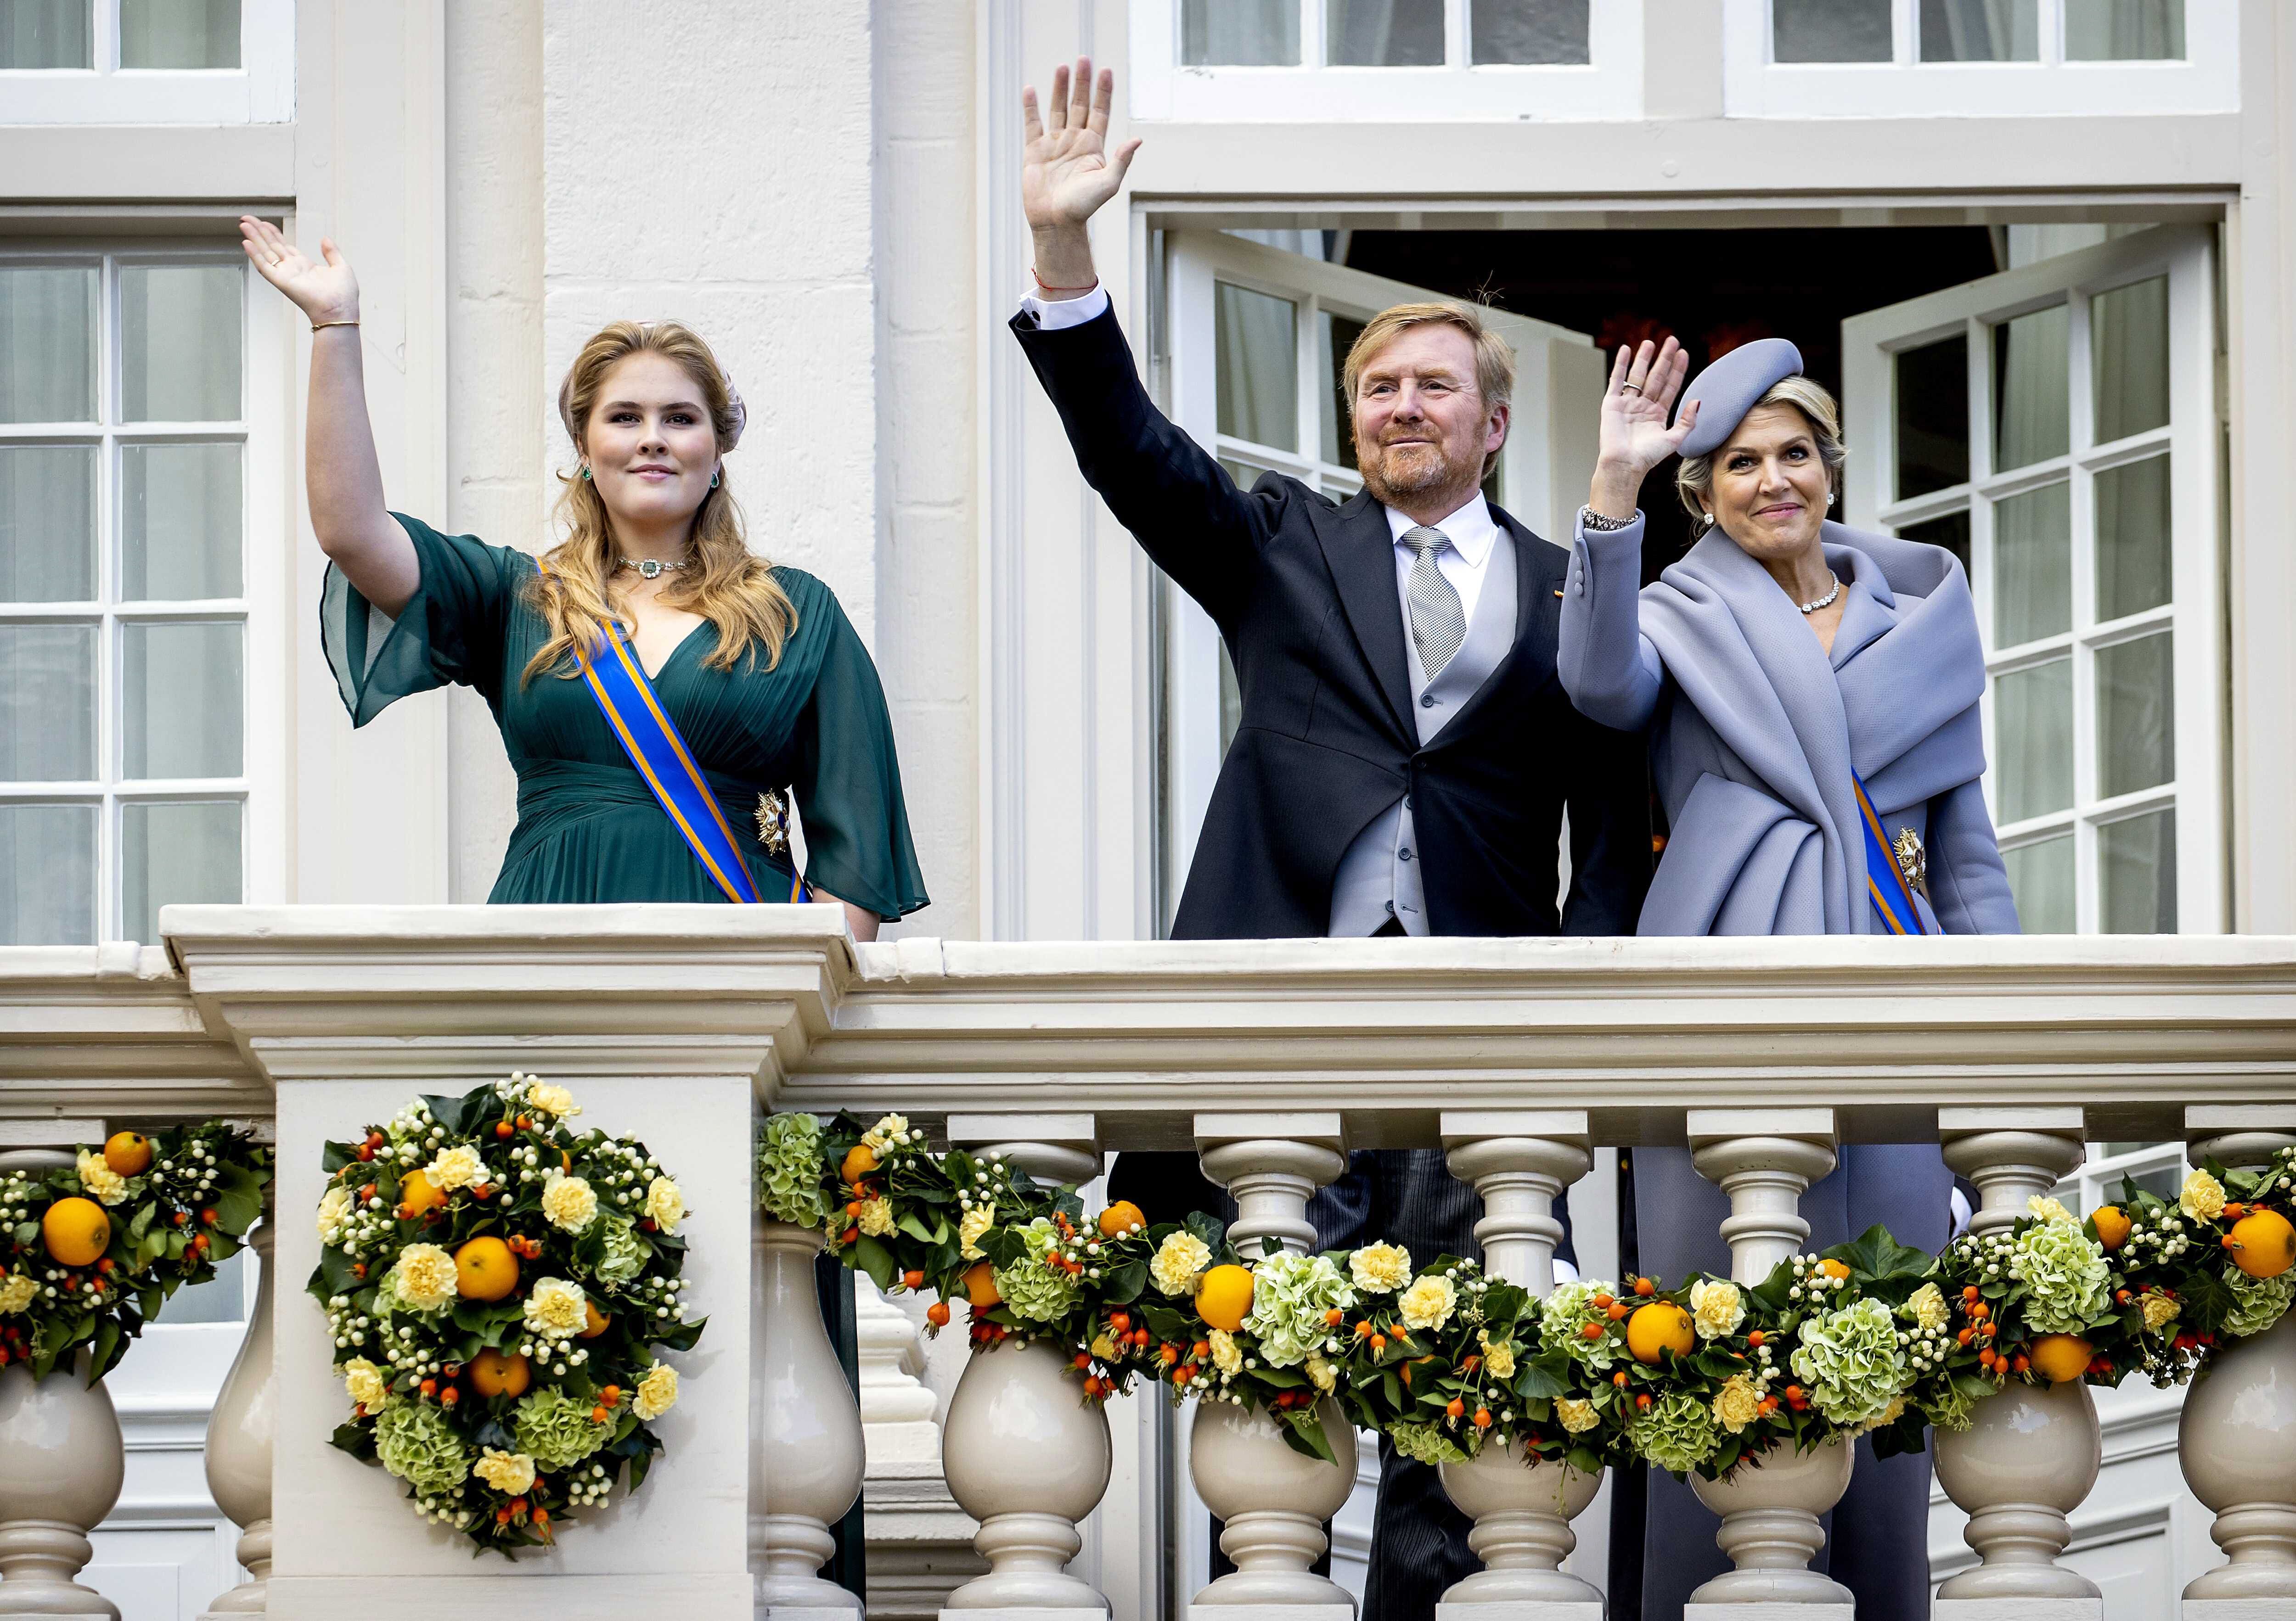 La princesa Amalia junto a los reyes de Holanda, Guillermo de Holanda y Máxima, saludando desde el palacio de Noordeinde, en La Haya.